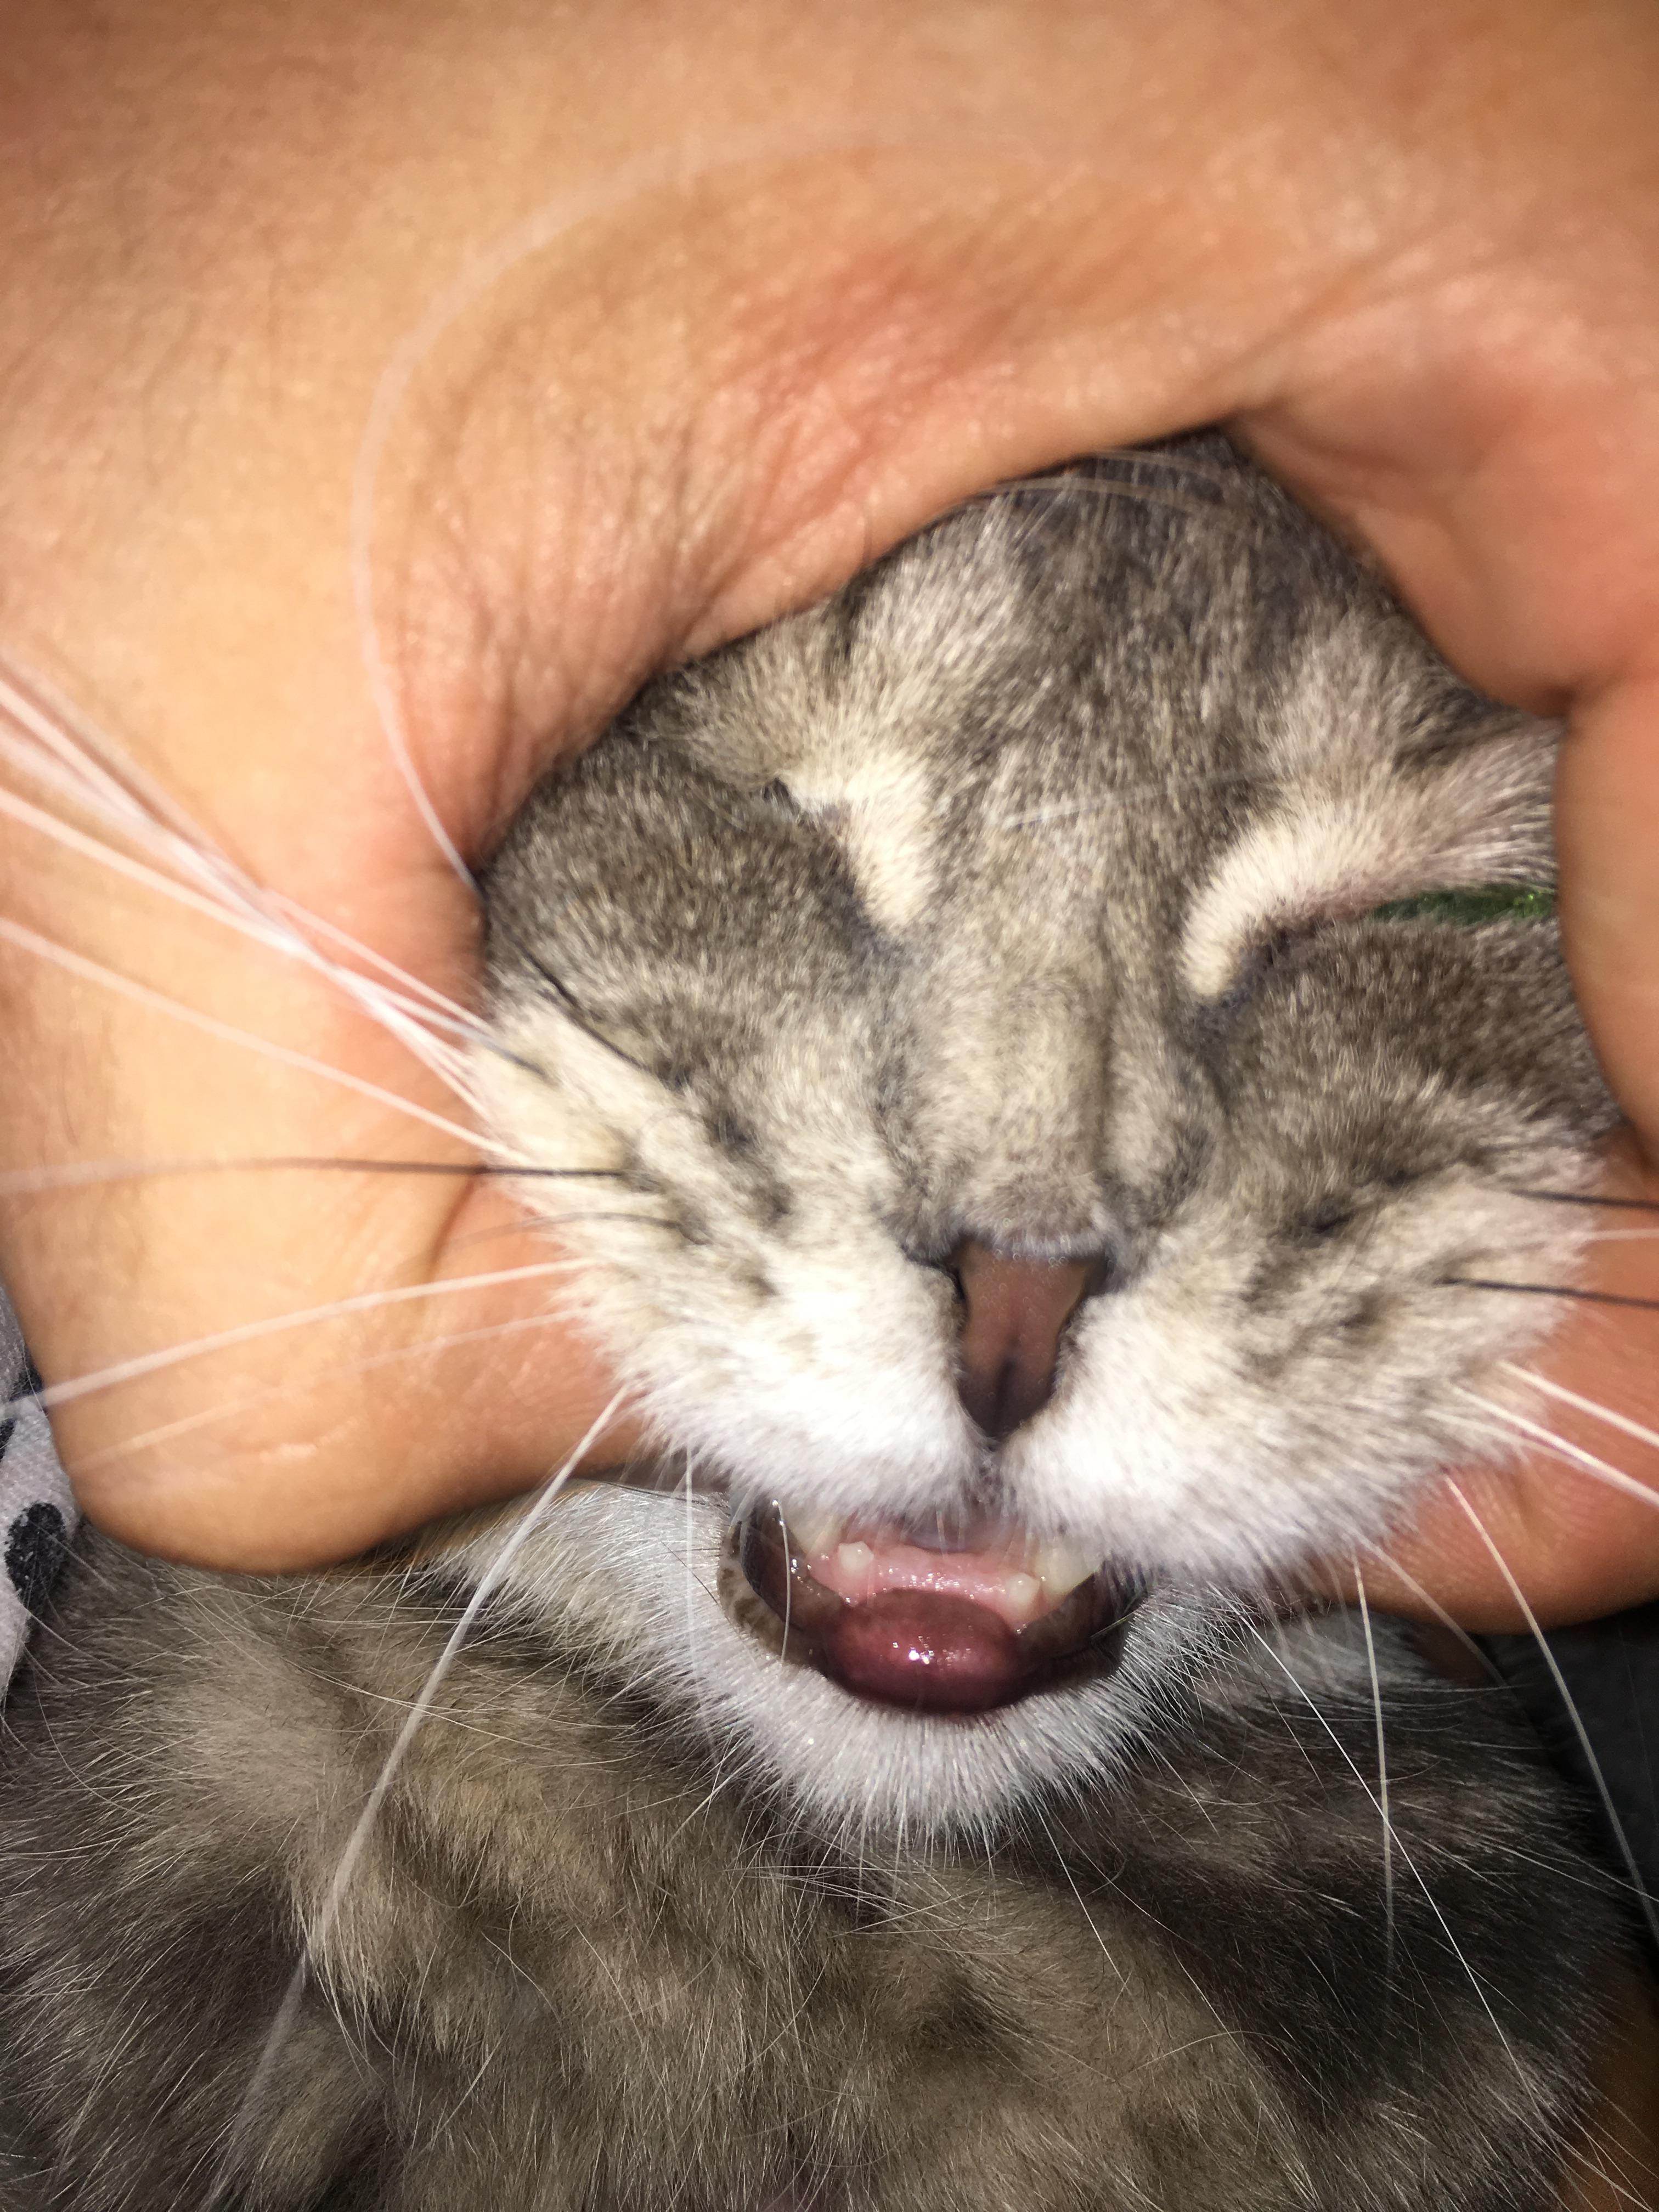 У кошки опухла нижняя губа: причины, что делать